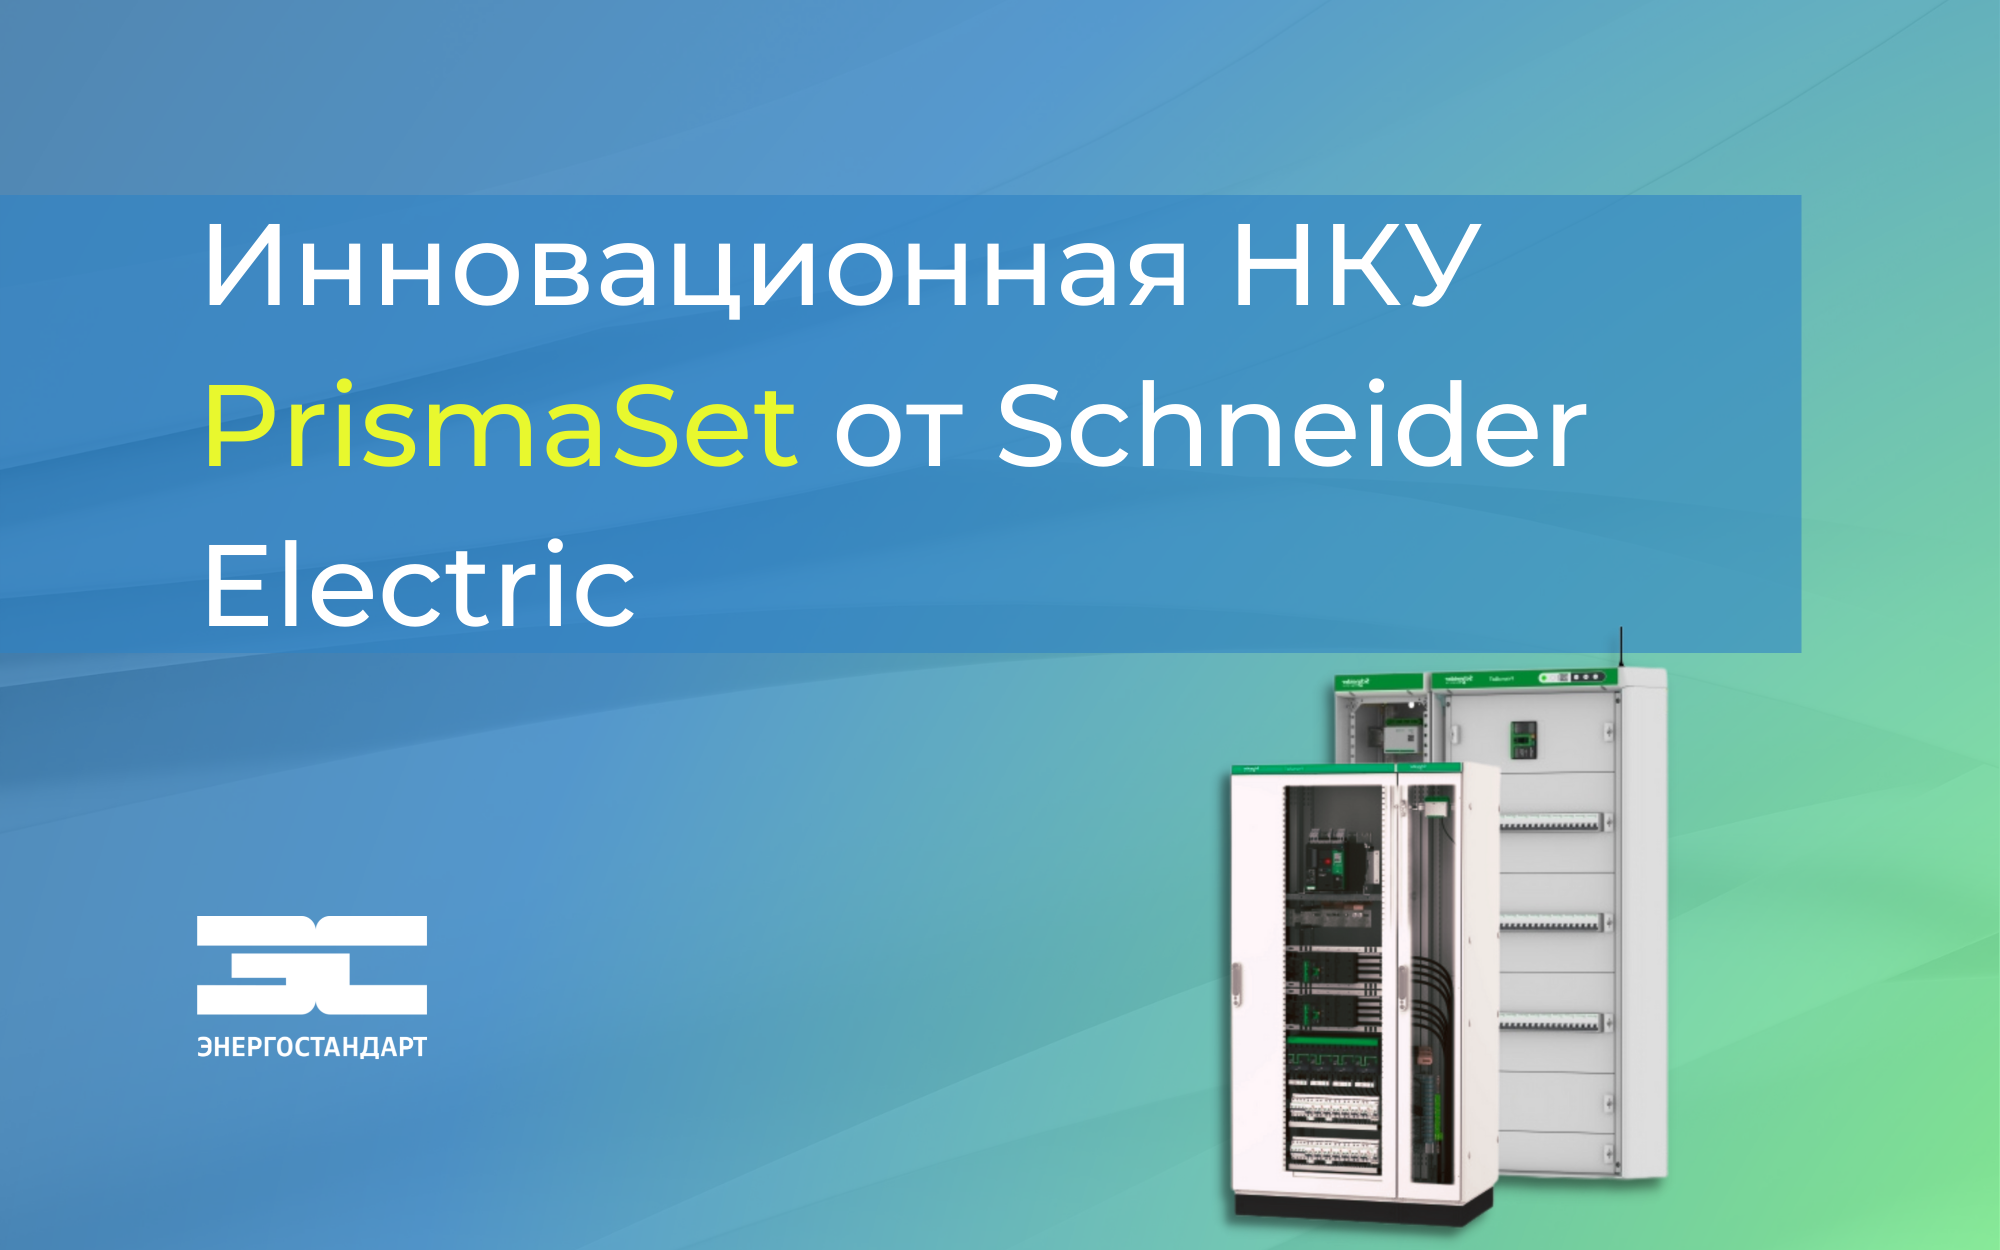 Инновационная НКУ PrismaSet от Schneider Electric<